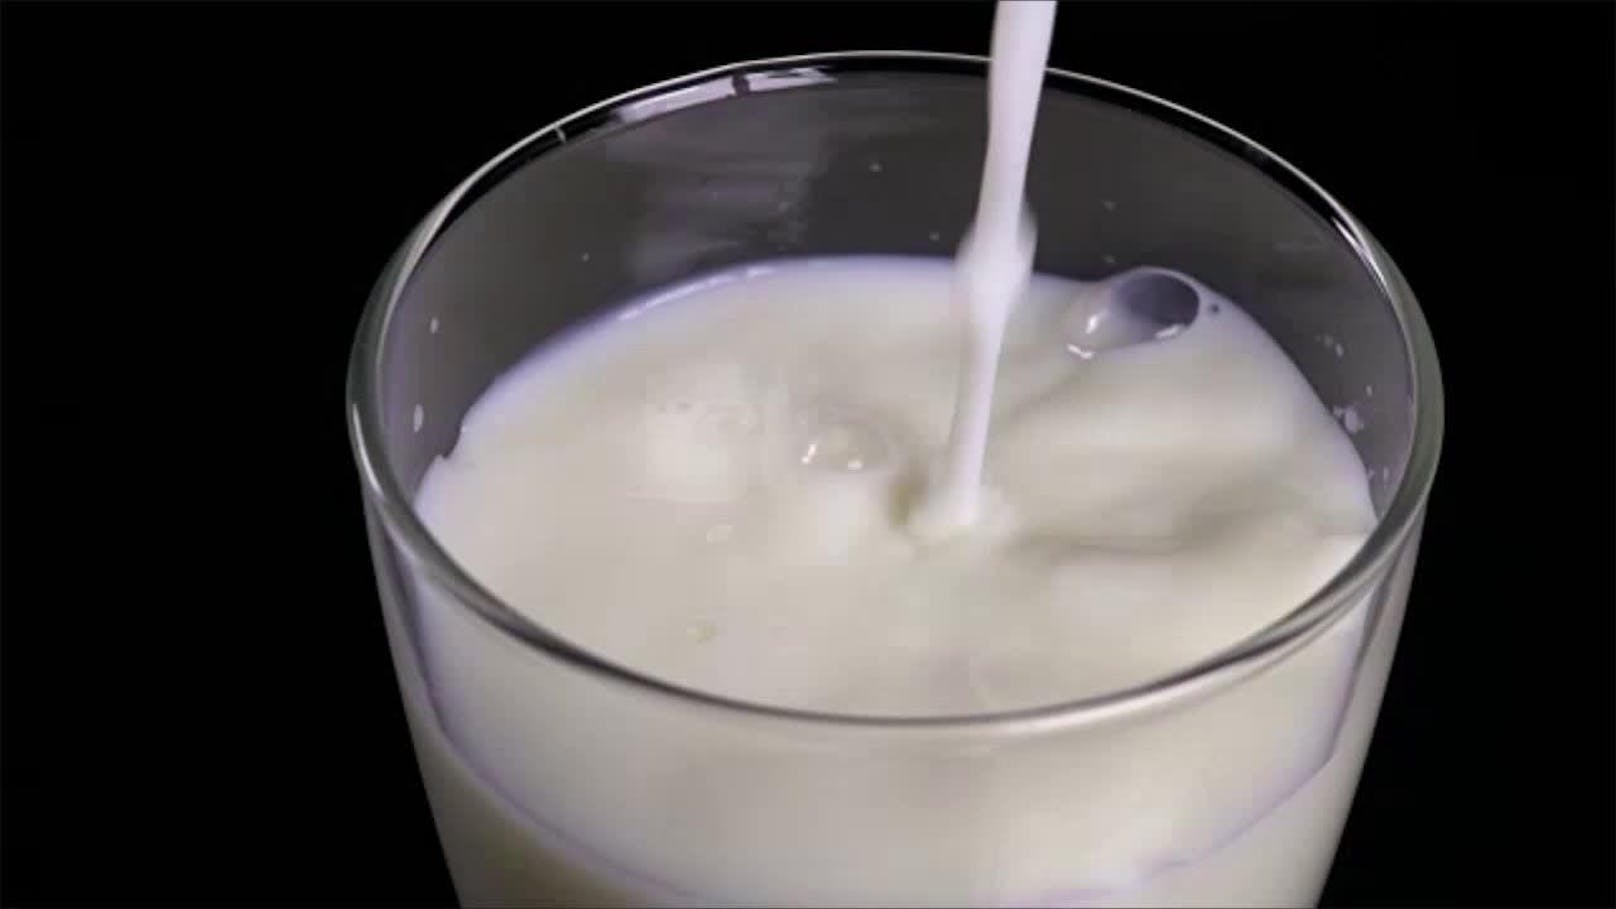 Nach dem Öffnen gehört Milch immer in den Kühlschrank und kann etwa drei Tage aufbewahrt werden. In einer ungeöffneten Verpackung ist Milch rund drei Tage nach Ablauf des Mindesthaltbarkeitsdatums genießbar. Danach kann mit einem kleinen Probeschluck herausgefunden werden, ob die Milch noch trinkbar ist.